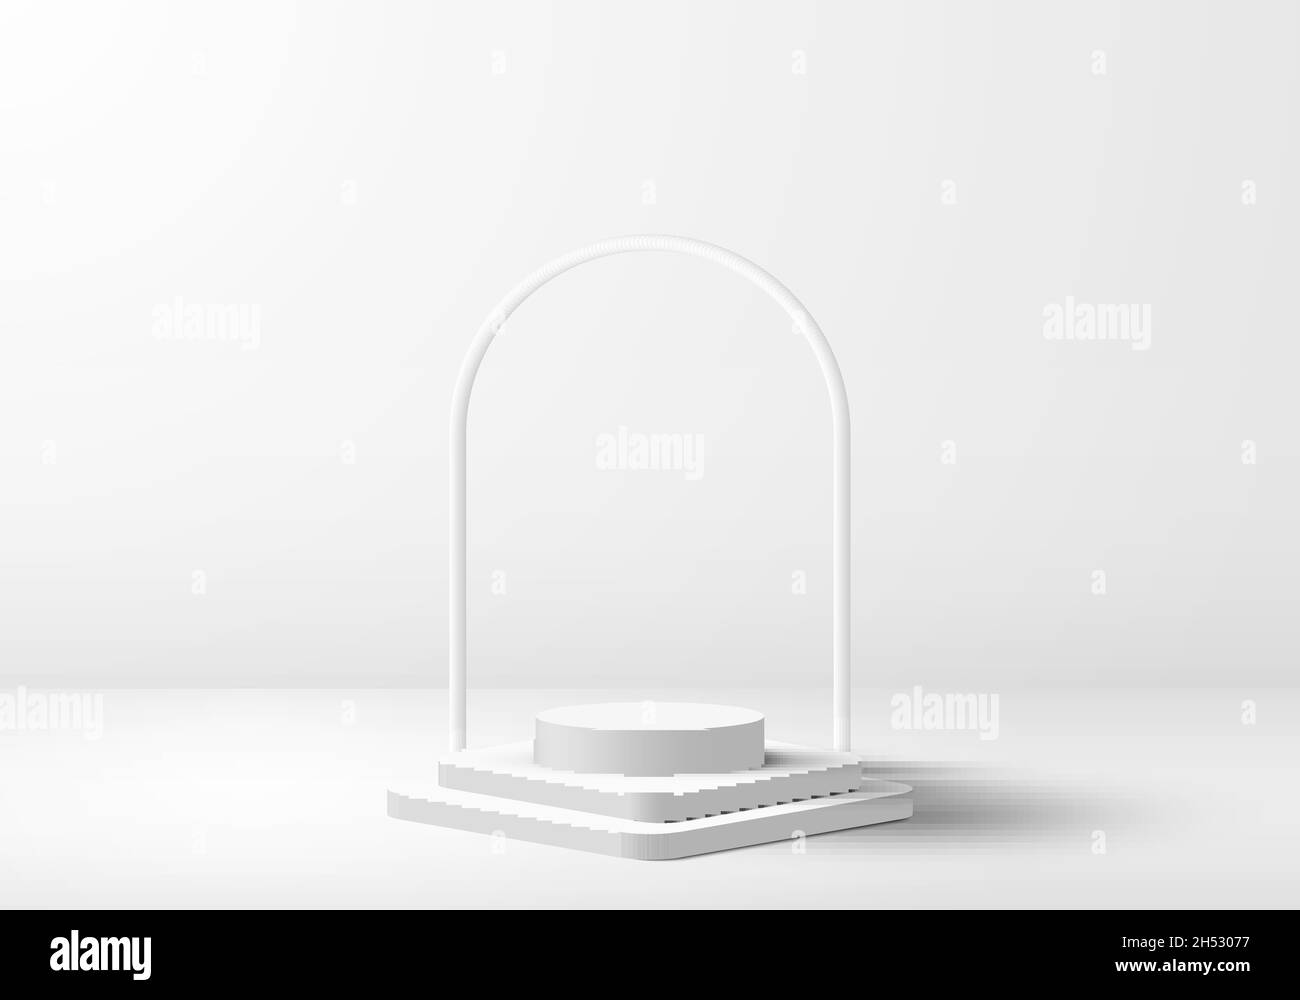 Affichage 3D réaliste du produit podium blanc sur fond propre style minimal.Conception géométrique de la plate-forme.Vous pouvez utiliser pour l'affichage et la présentation du produit Illustration de Vecteur